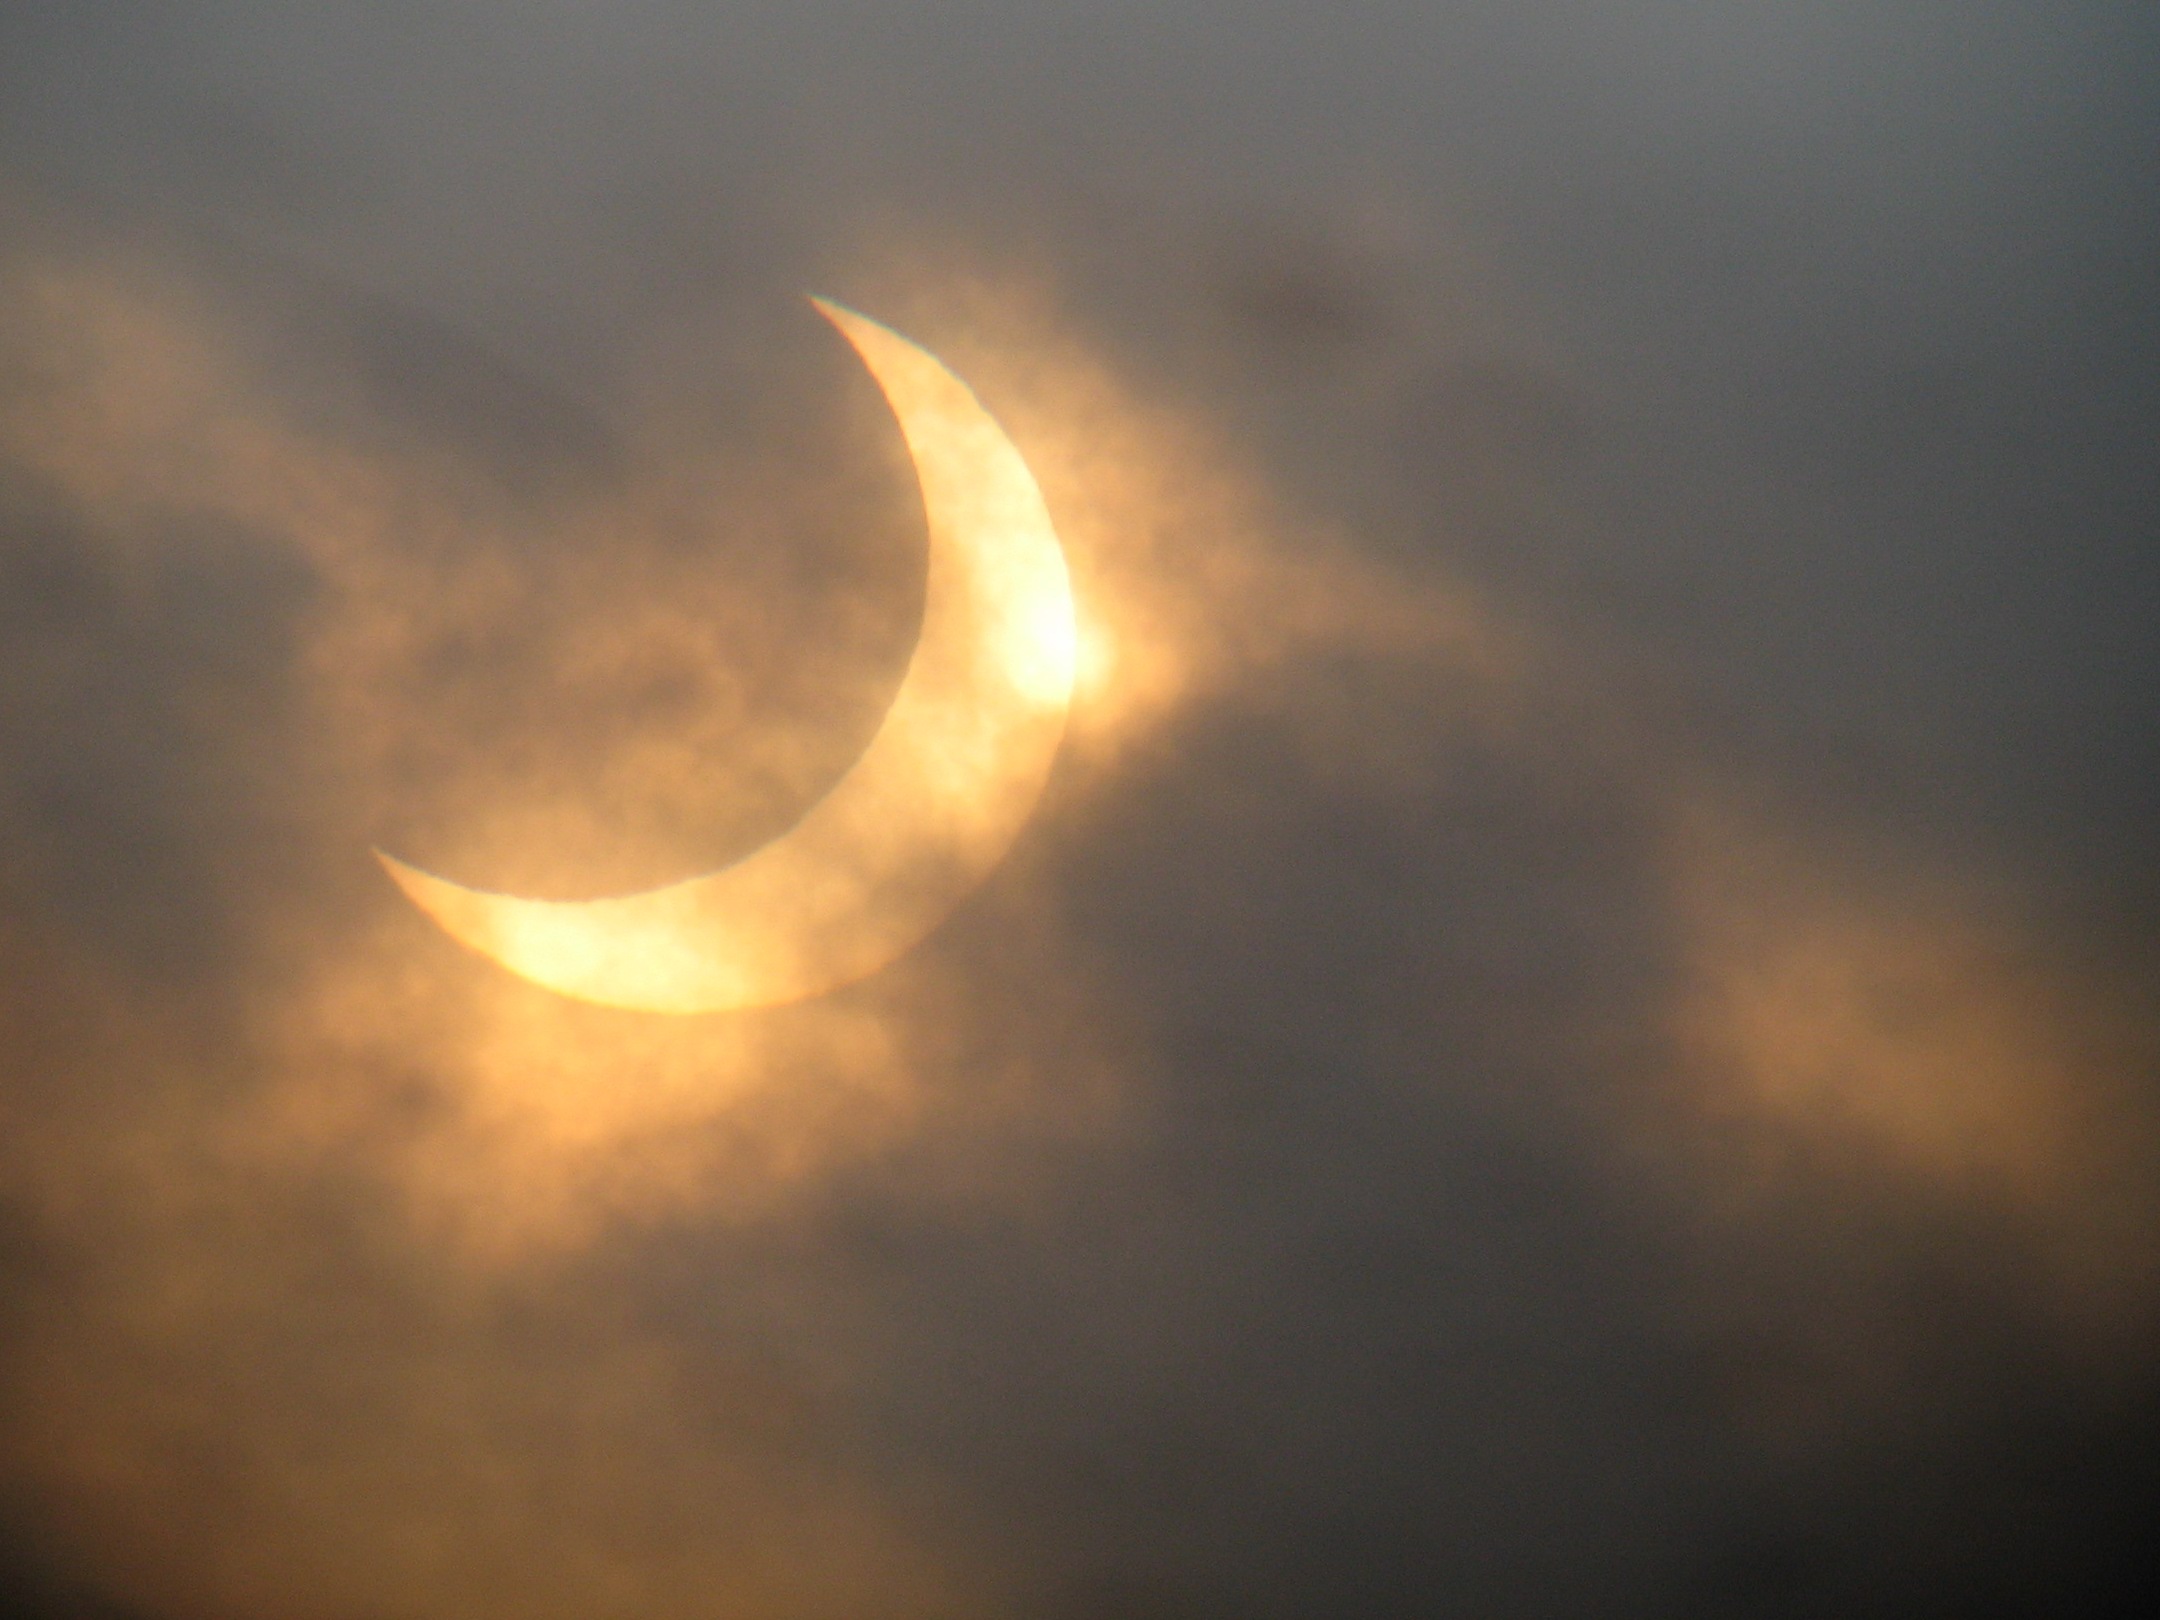 Solformørkelsen fotografert fra Hornsyld i Danmark kl. 09.30. Foto: Hans Kristian Munkejord